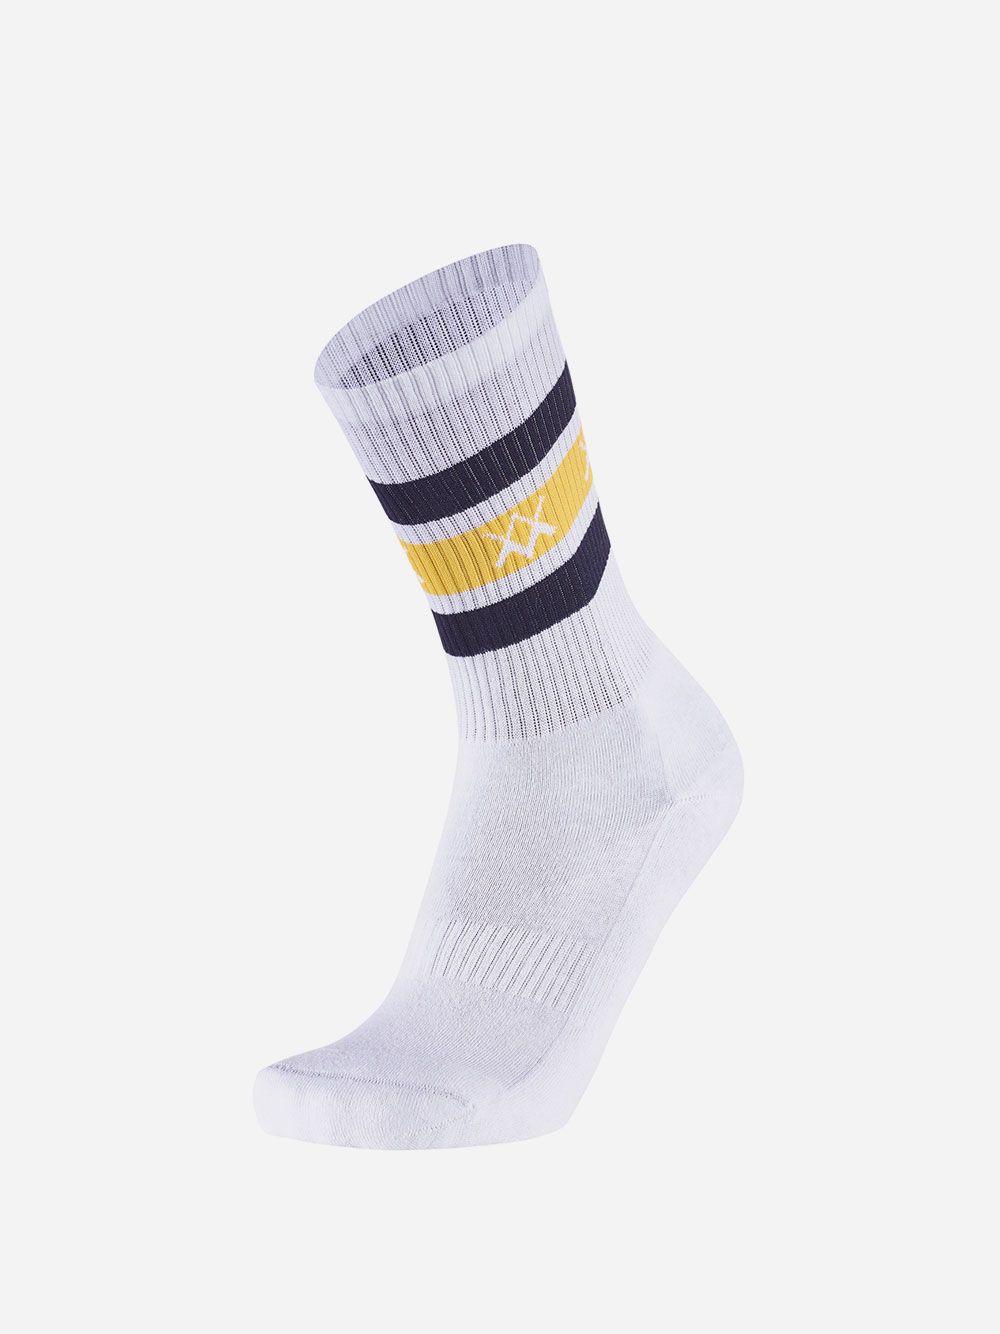 White Socks Stripes WM | Westmister